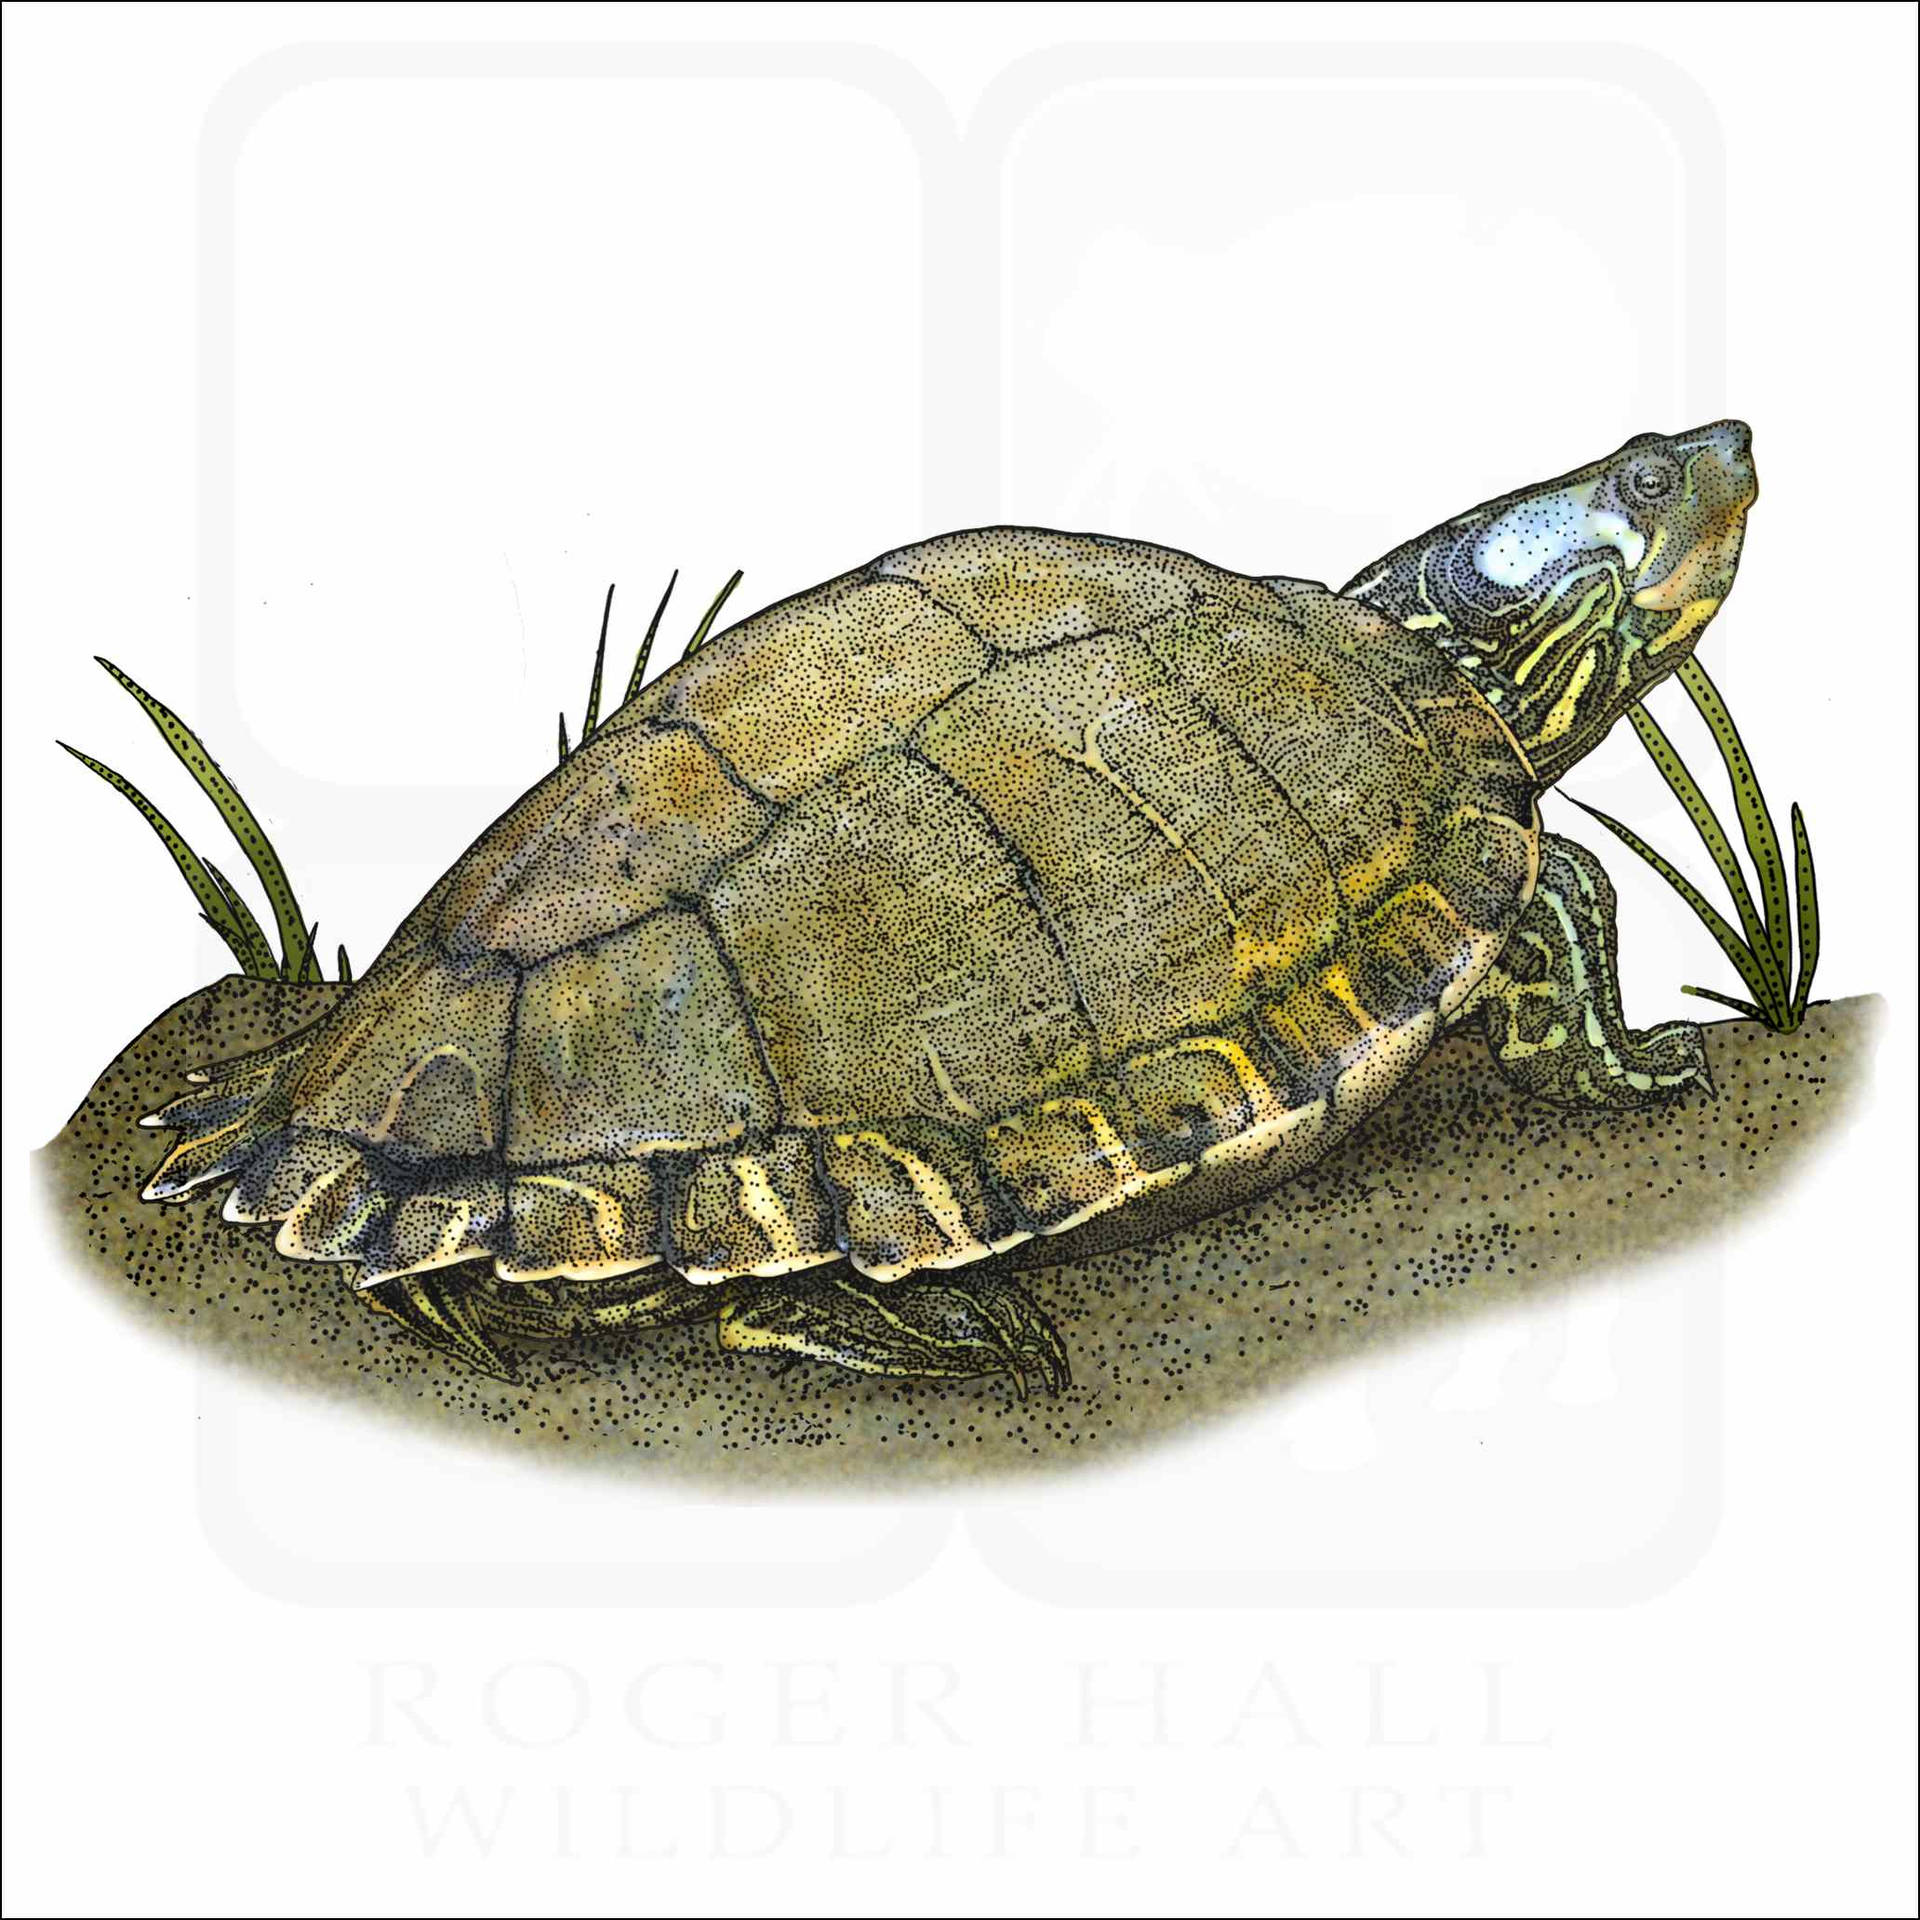 Escambia Map Turtle Illustration Wallpaper